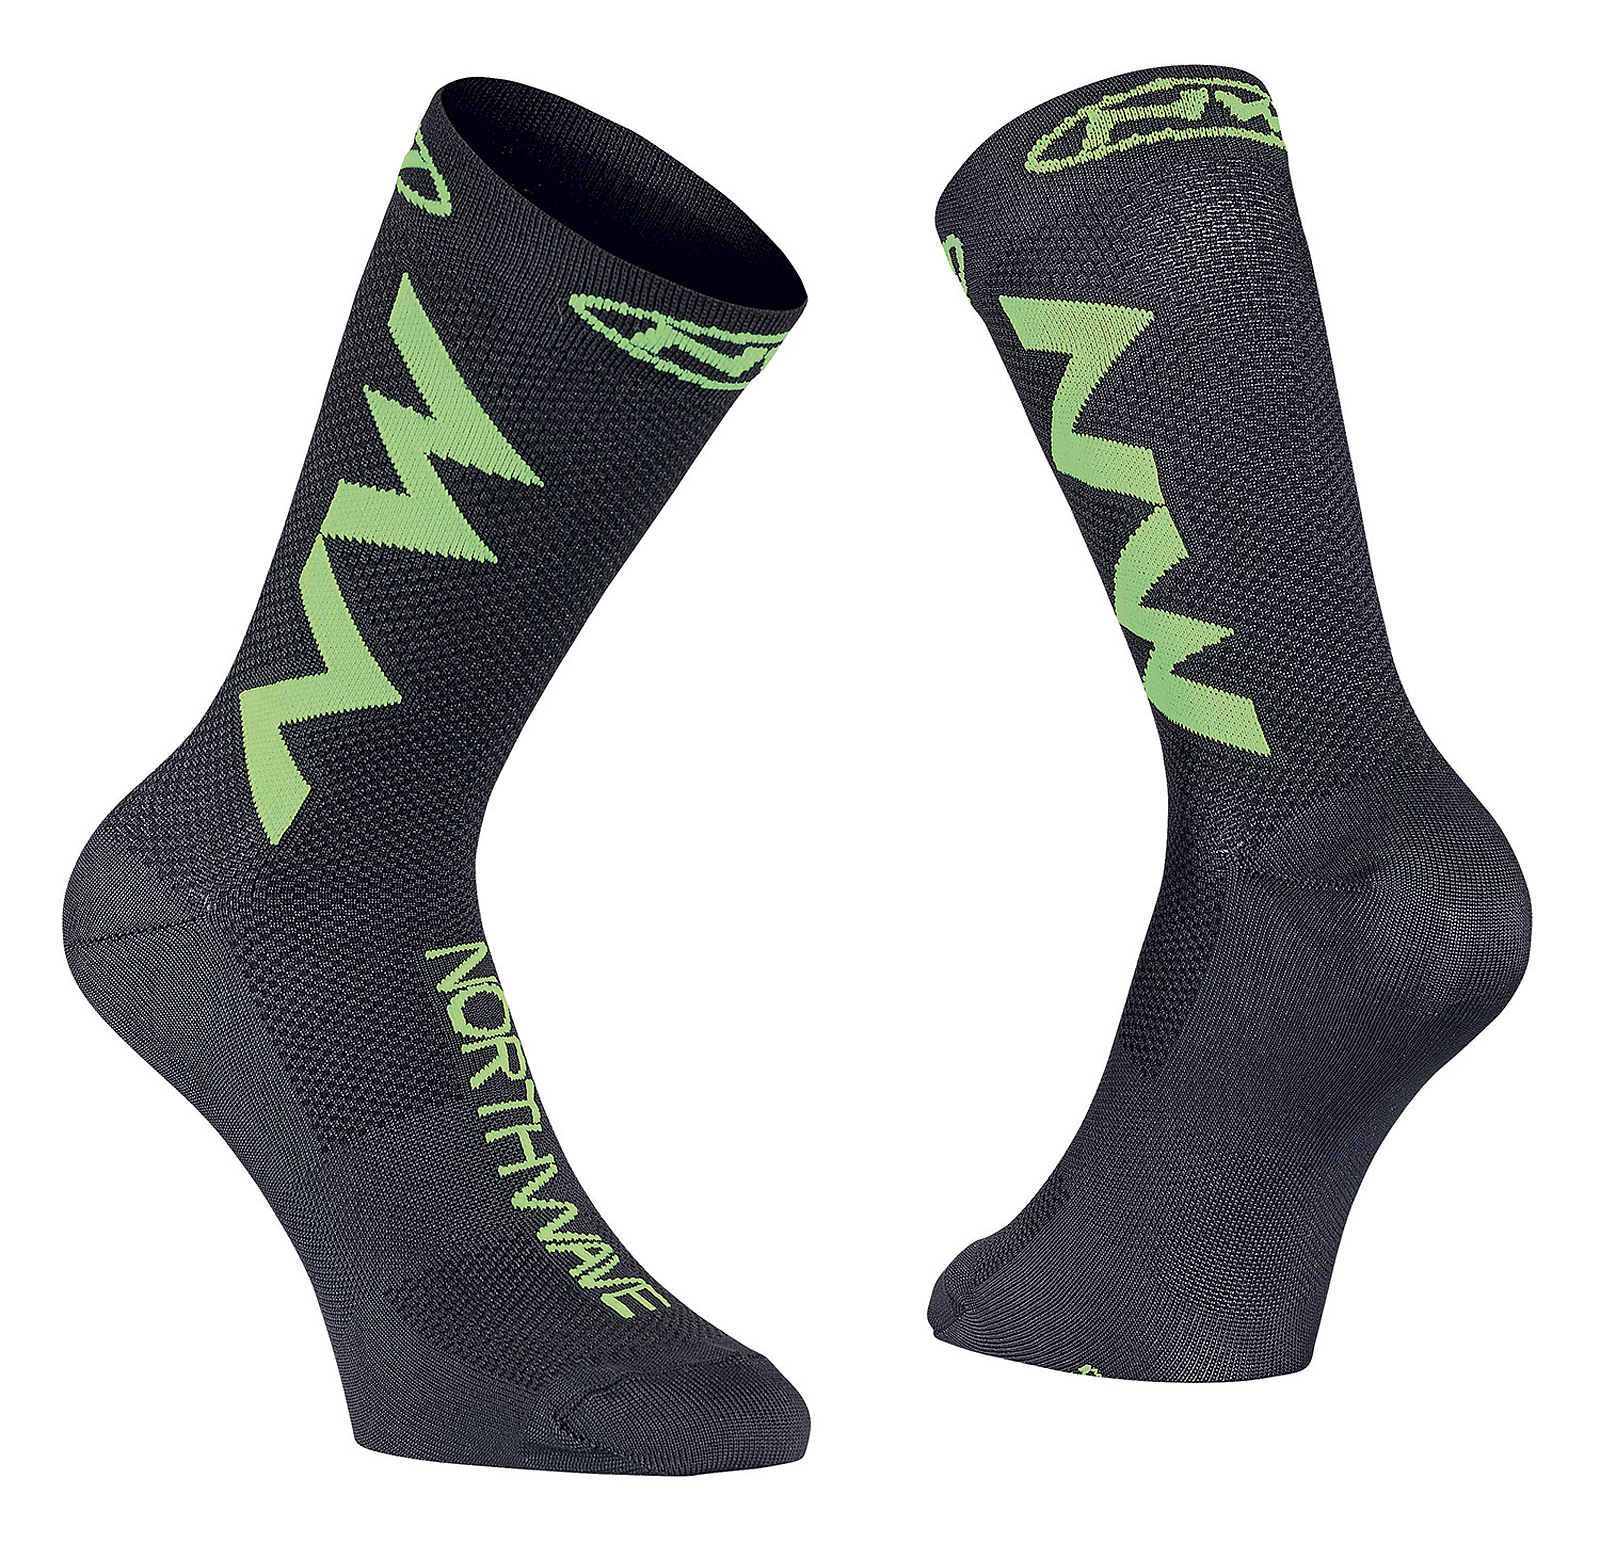 Northwave Extreme Air Fahrrad Socken schwarz/grün 2019 